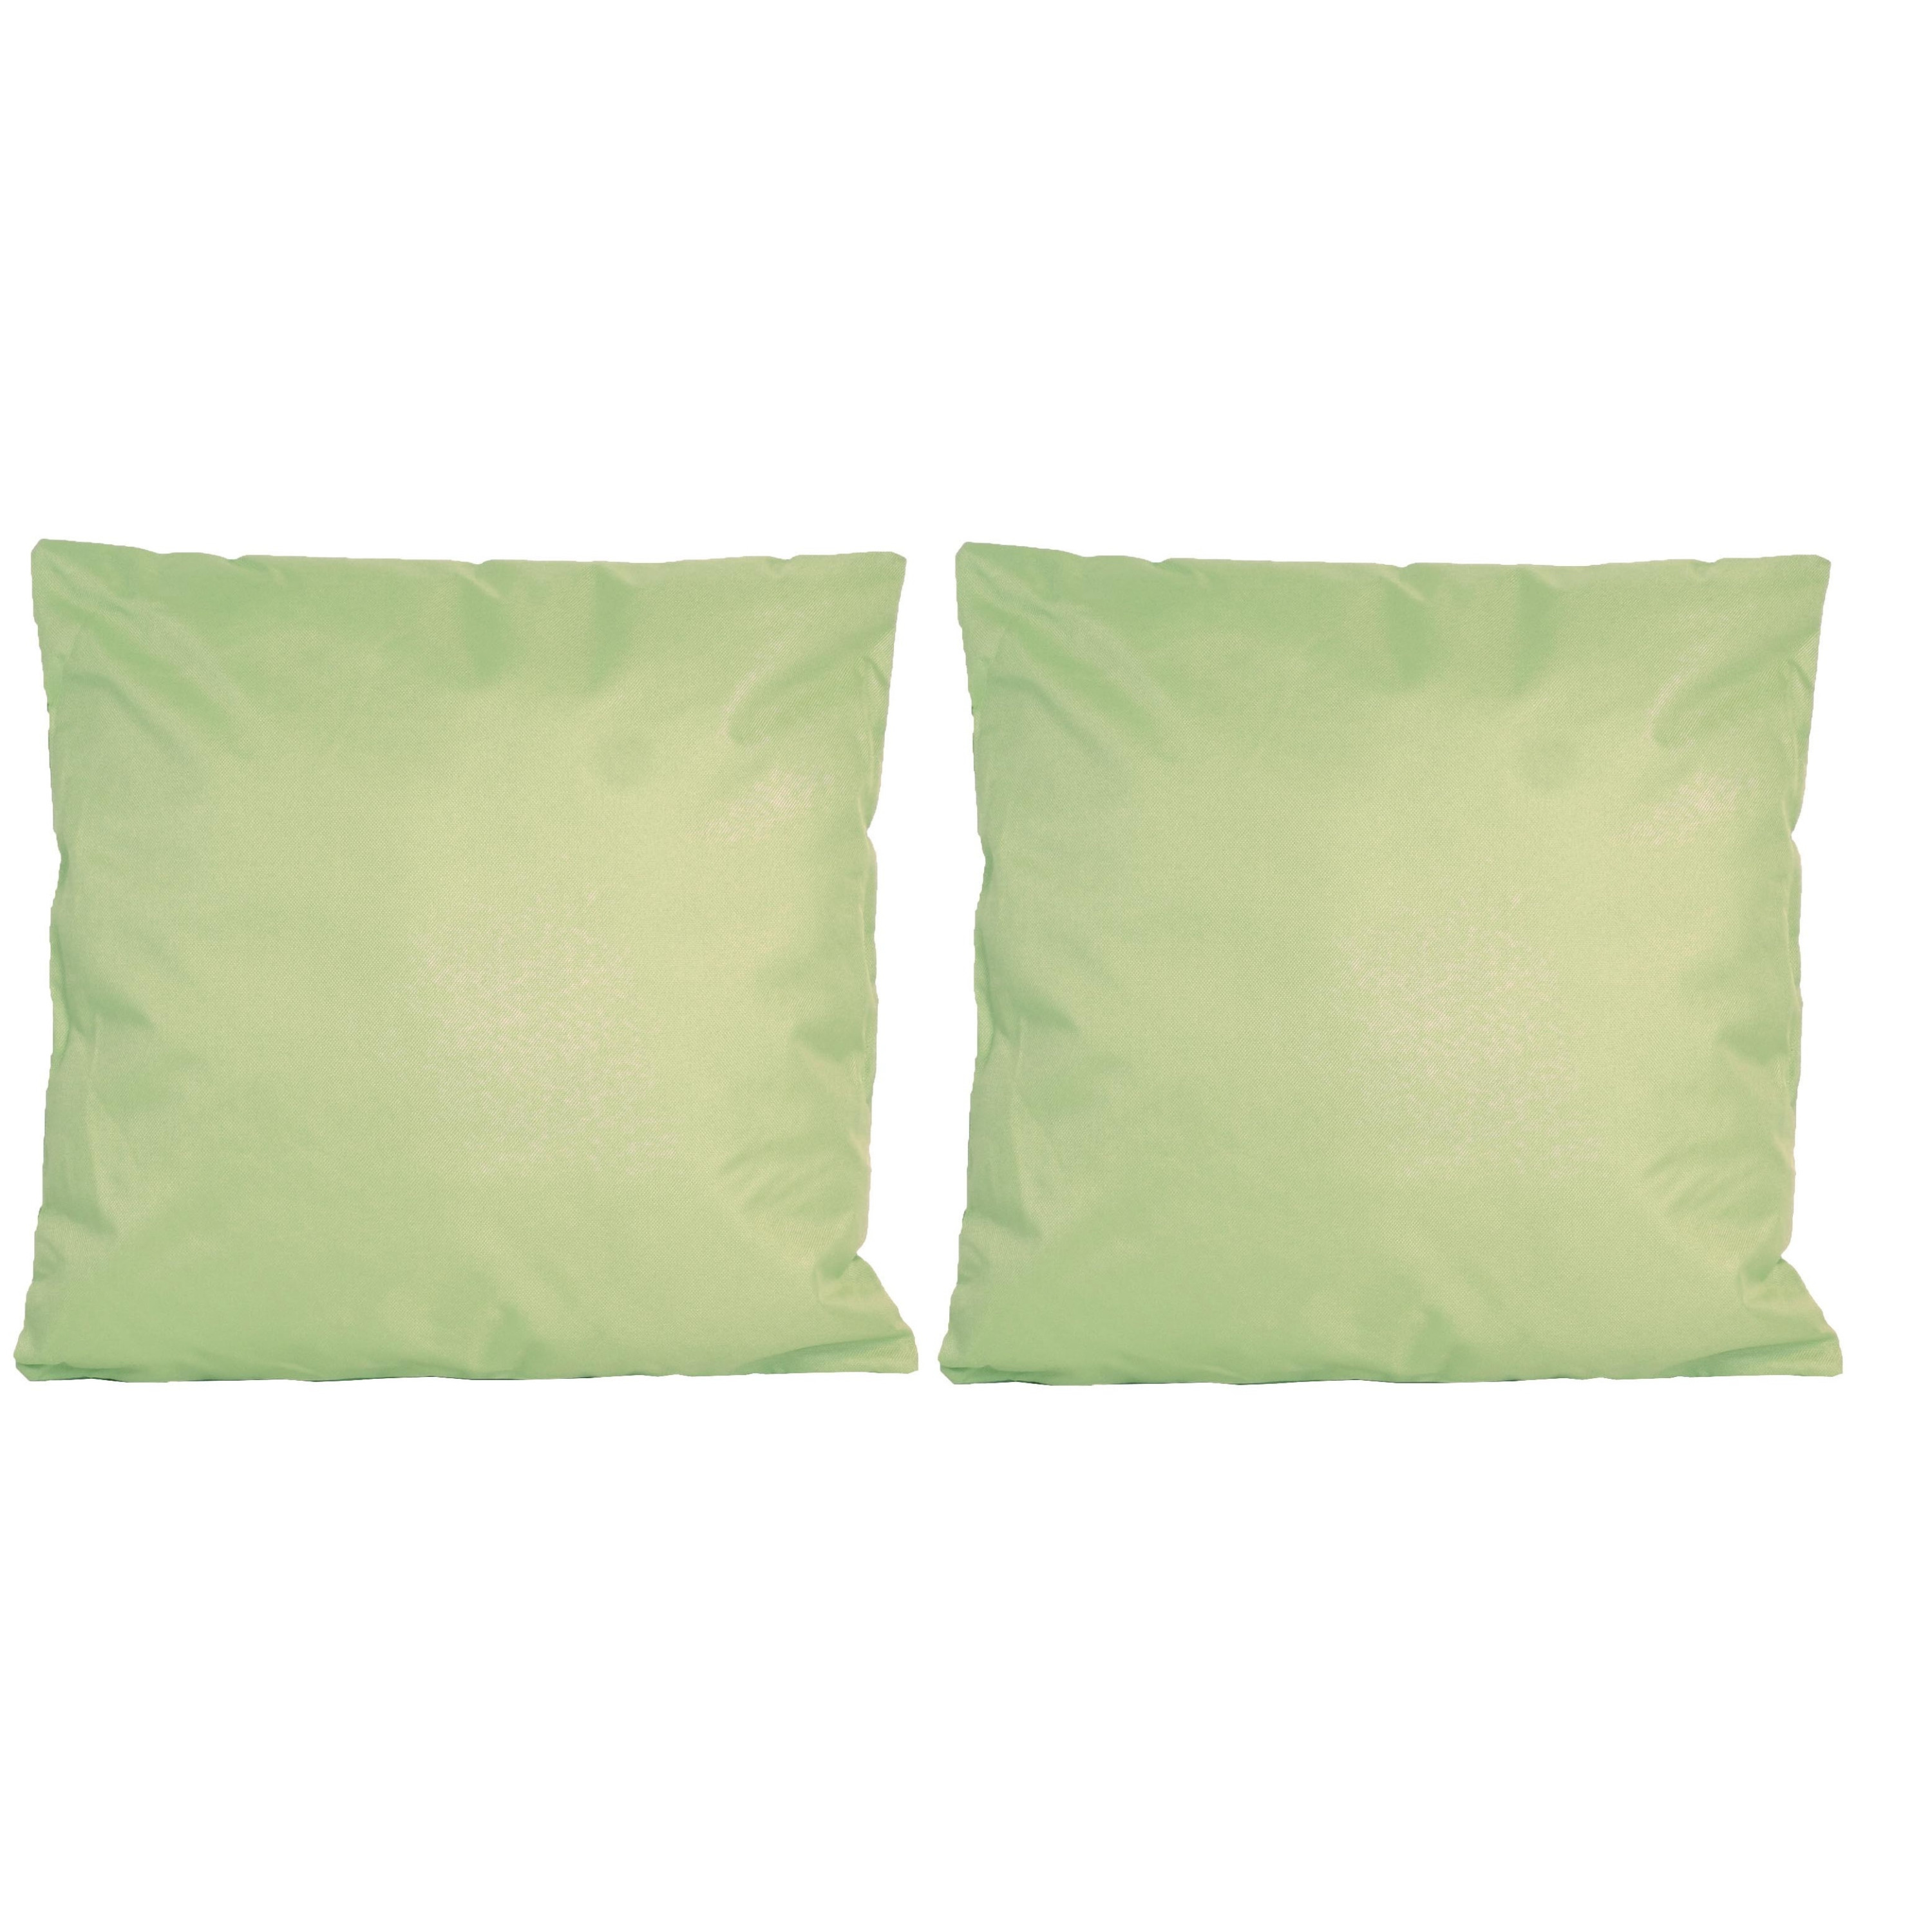 6x Bank-sier kussens voor binnen en buiten in de kleur mint groen 45 x 45 cm